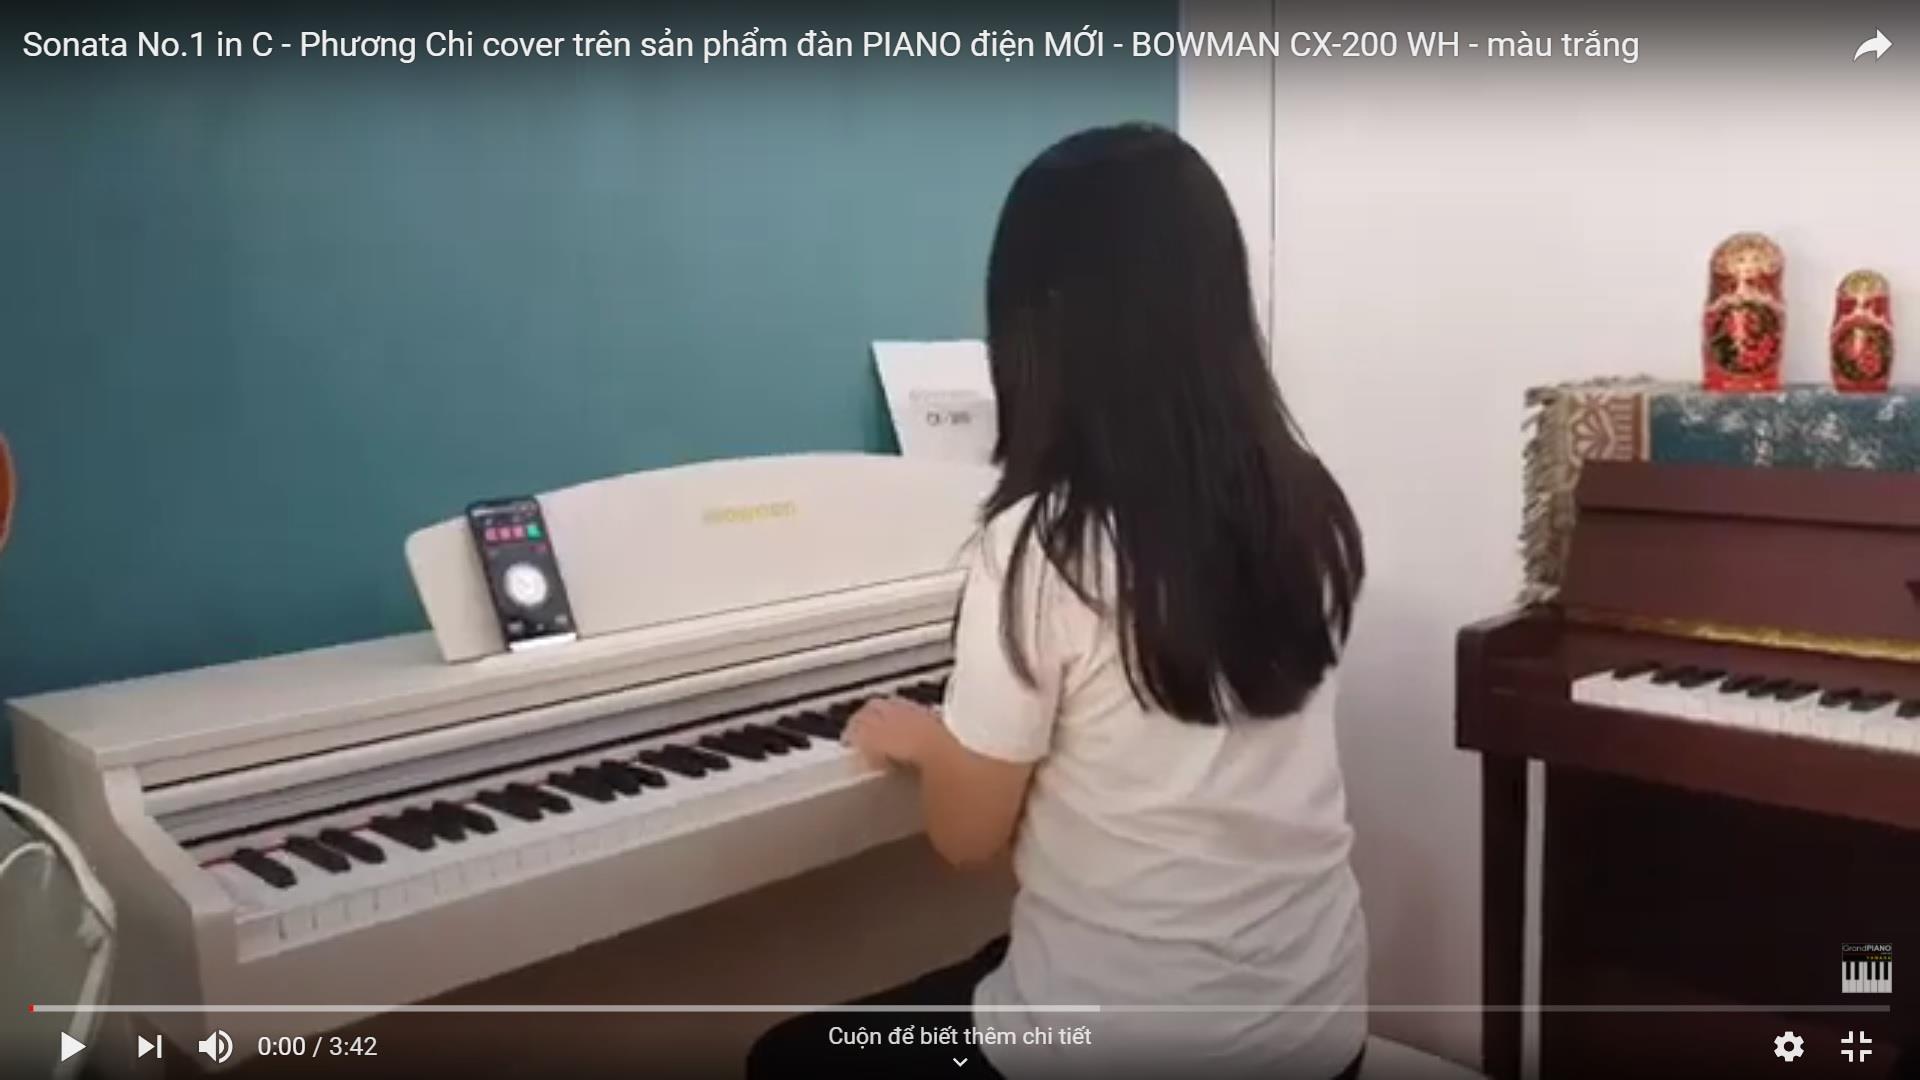 Sonata No.1 in C - Phương Chi cover trên sản phẩm đàn PIANO điện MỚI - BOWMAN CX-200 WH - màu trắng